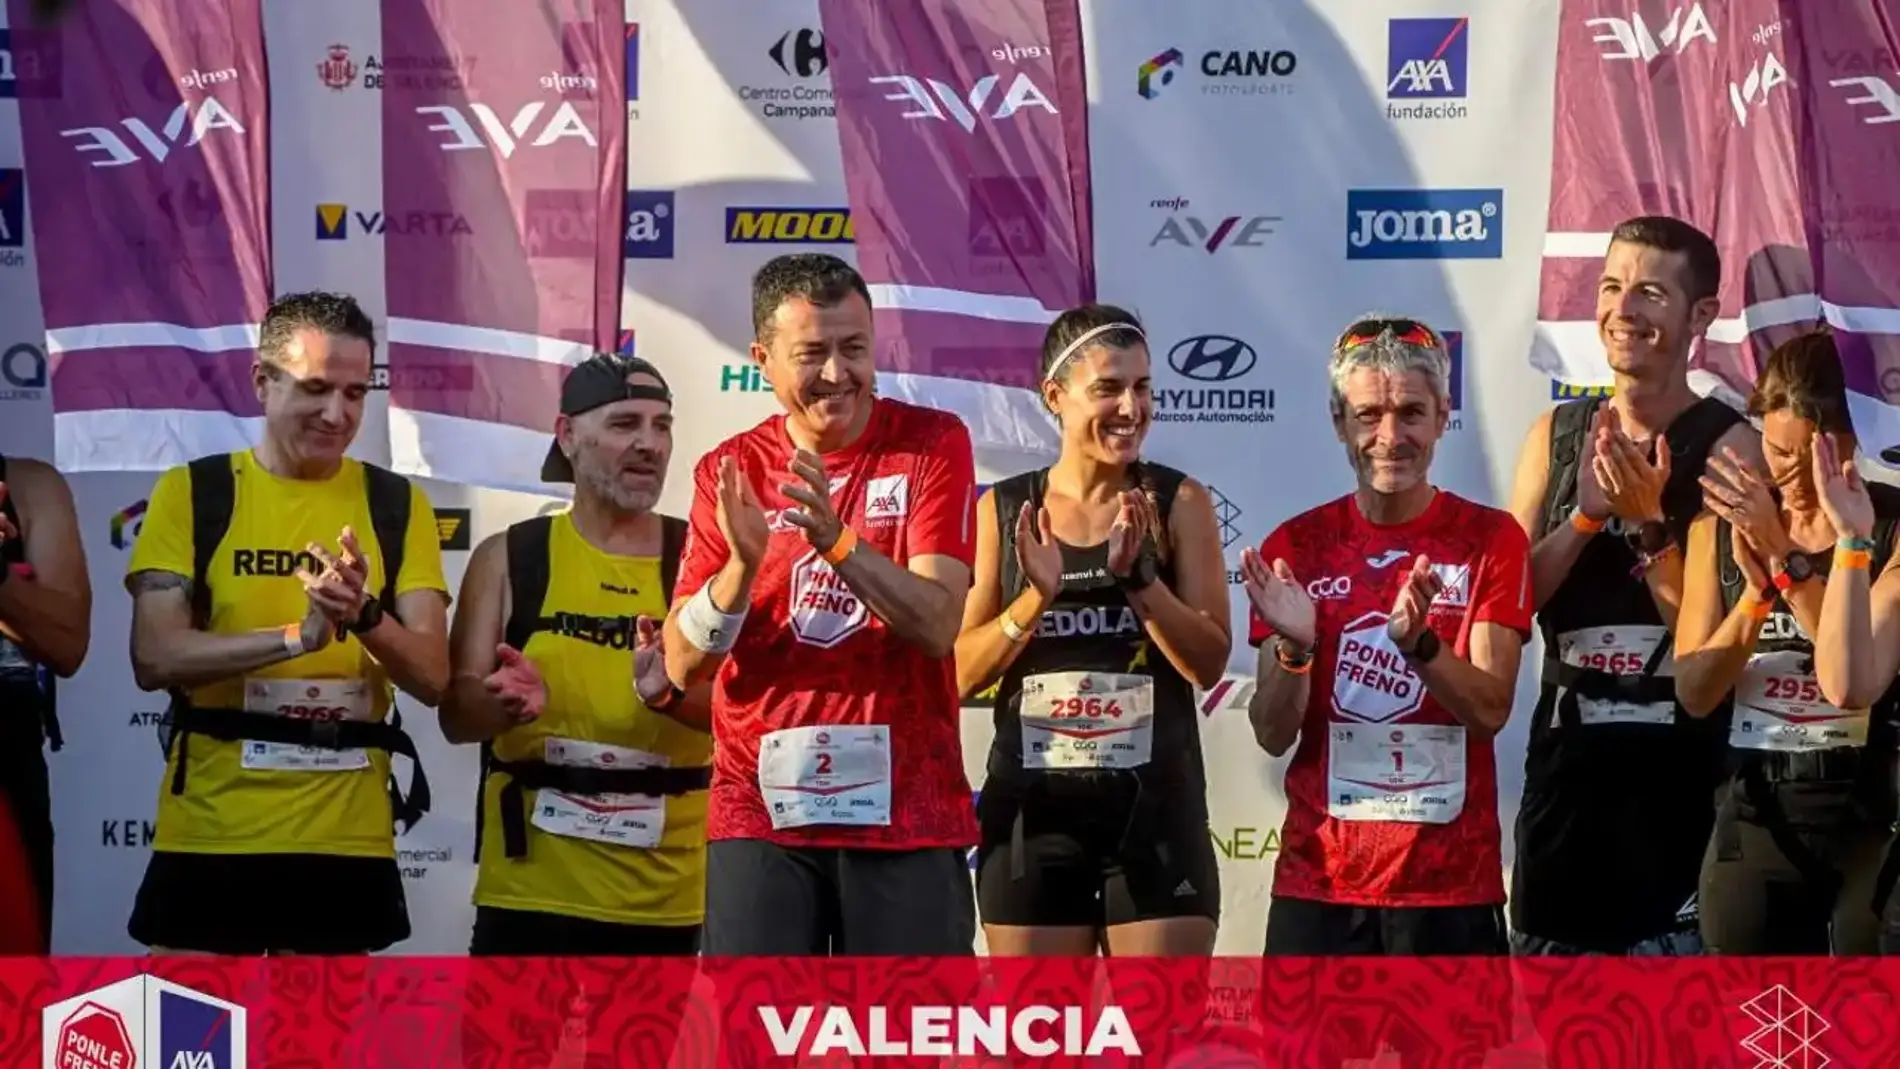 La carrera Ponle Freno se celebra en Valencia